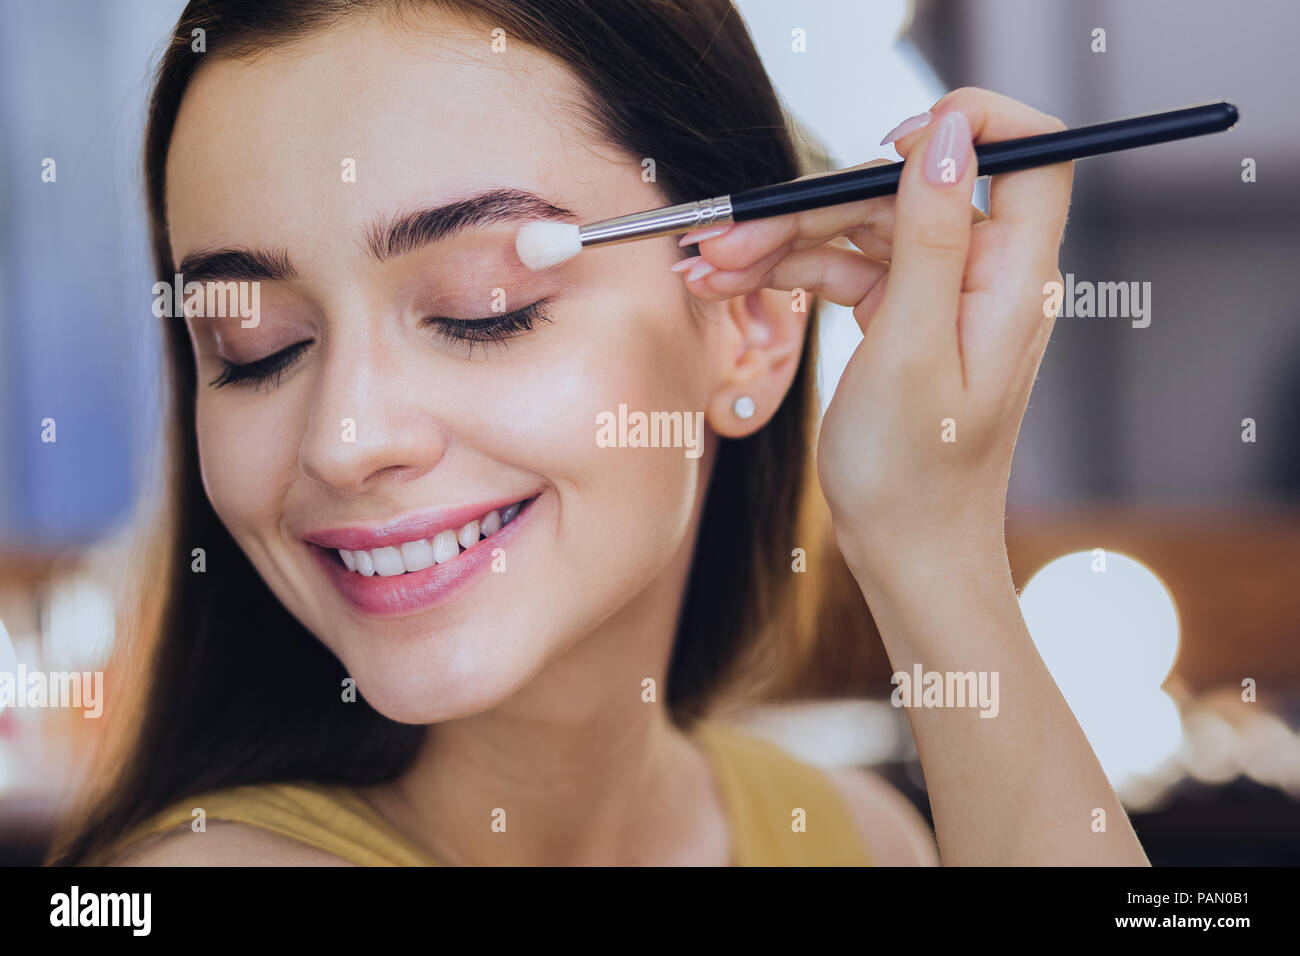 Angenehmes Lächeln make-up-artist Abschluss ihres Alltags Make-up Stockfoto